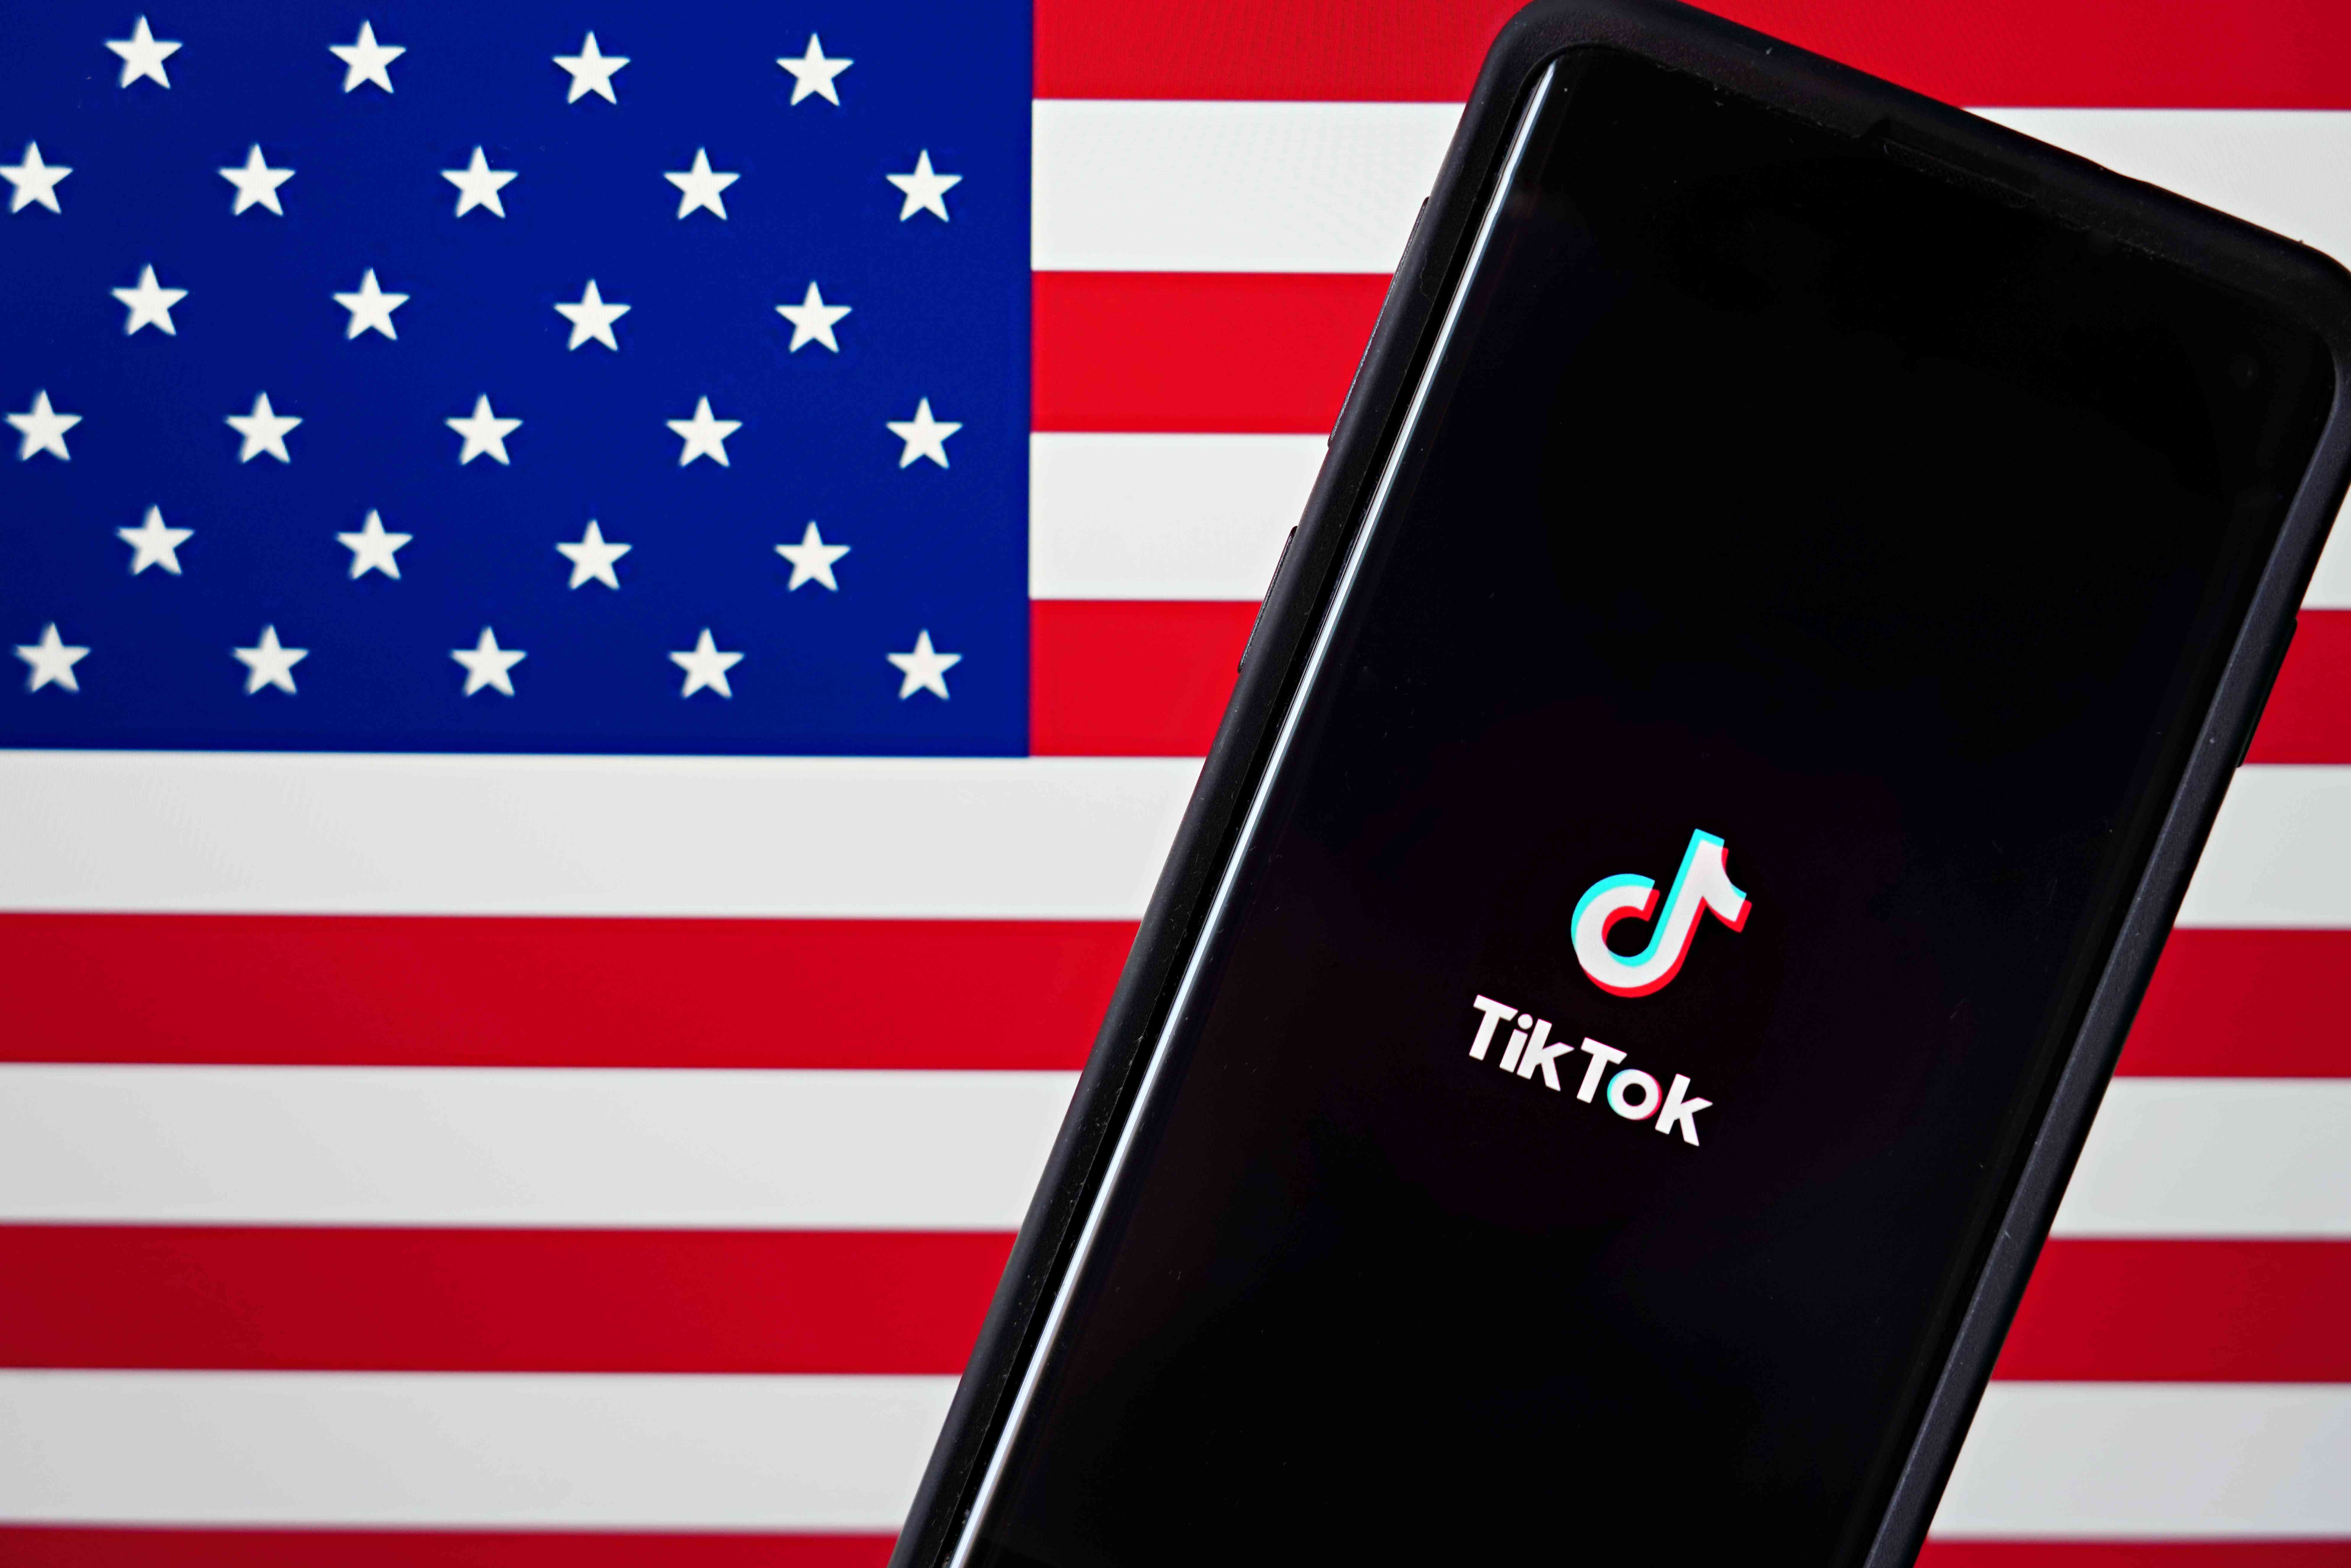 En mobiltelefon med TikTok-appen visas bredvid den amerikanska flaggan